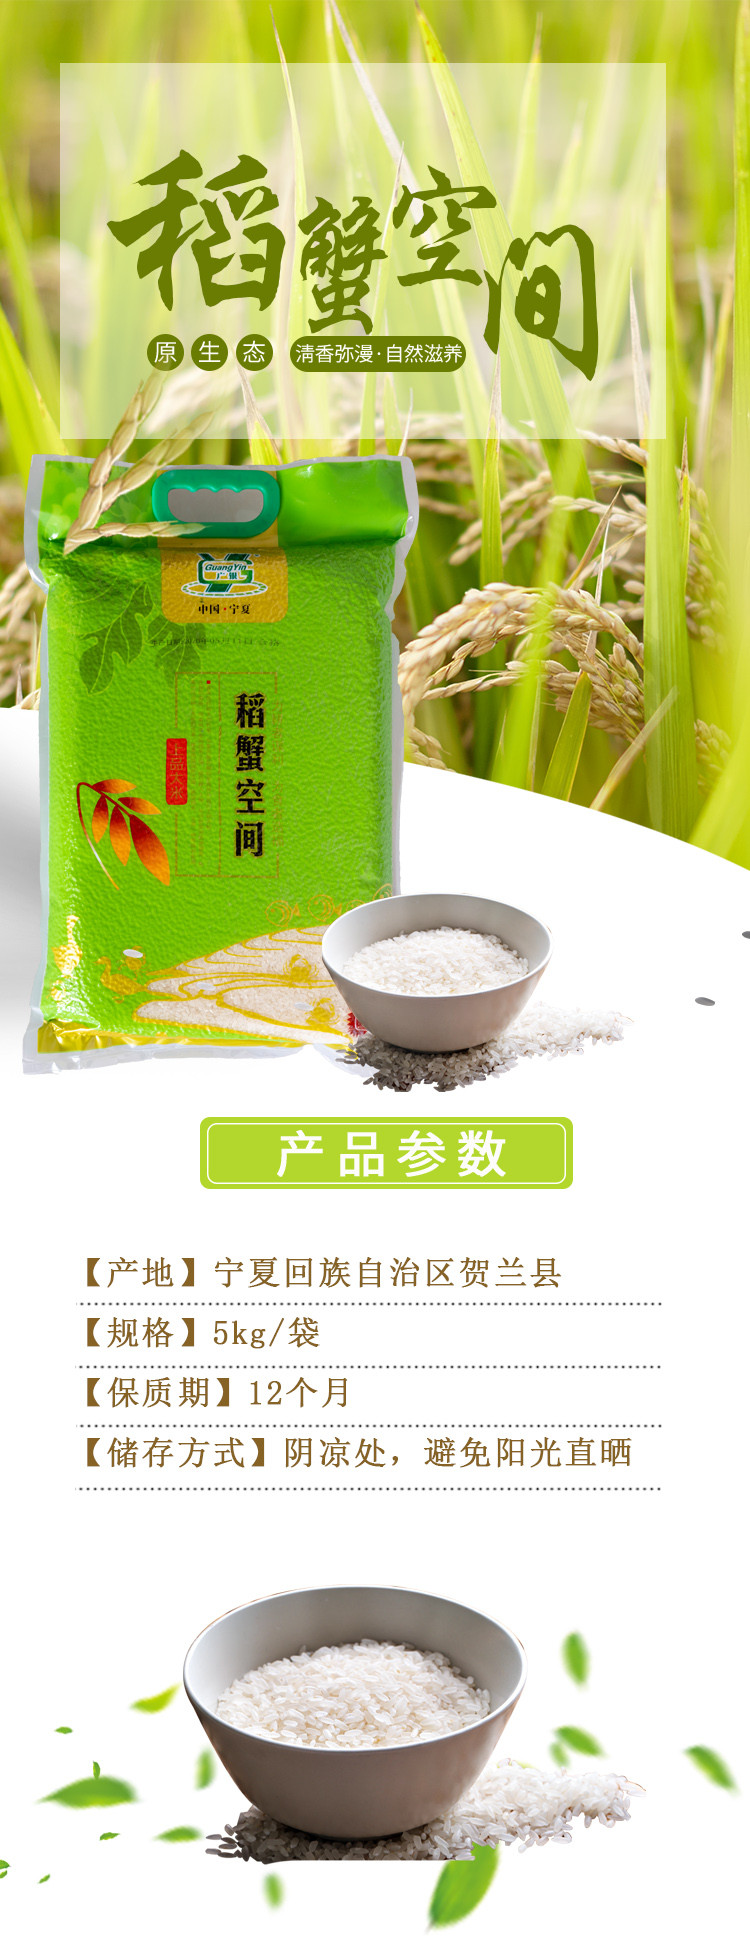 广银米业 稻渔空间 宁夏大米 稻蟹空间 5kg